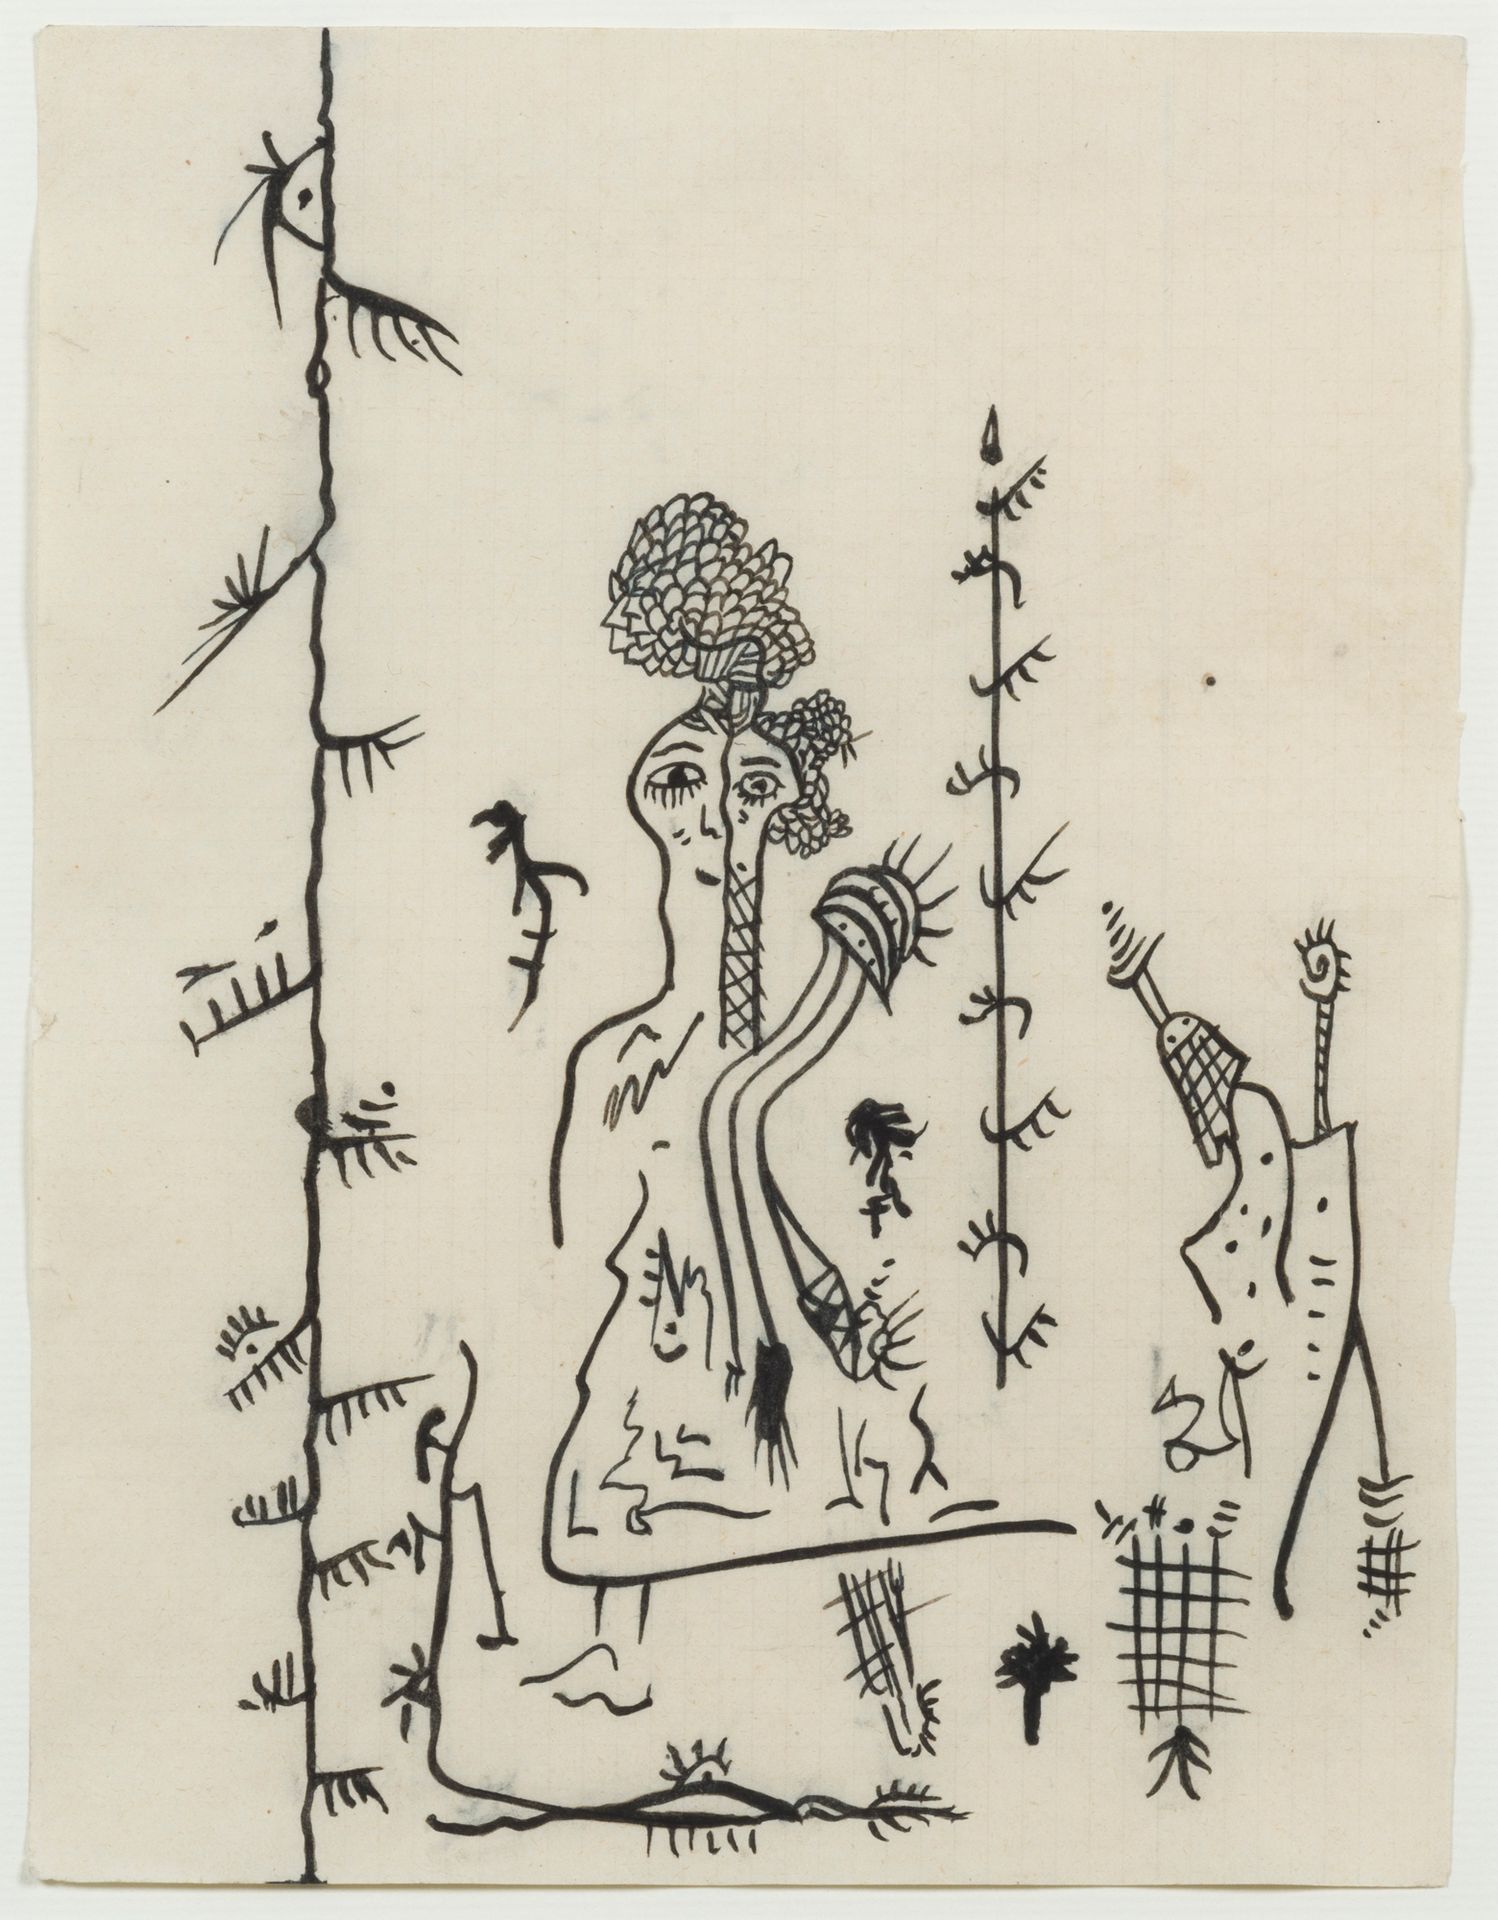 GASTON CHAISSAC (1910-64) Composizione con figure, 1945-46.
Inchiostro su carta.&hellip;